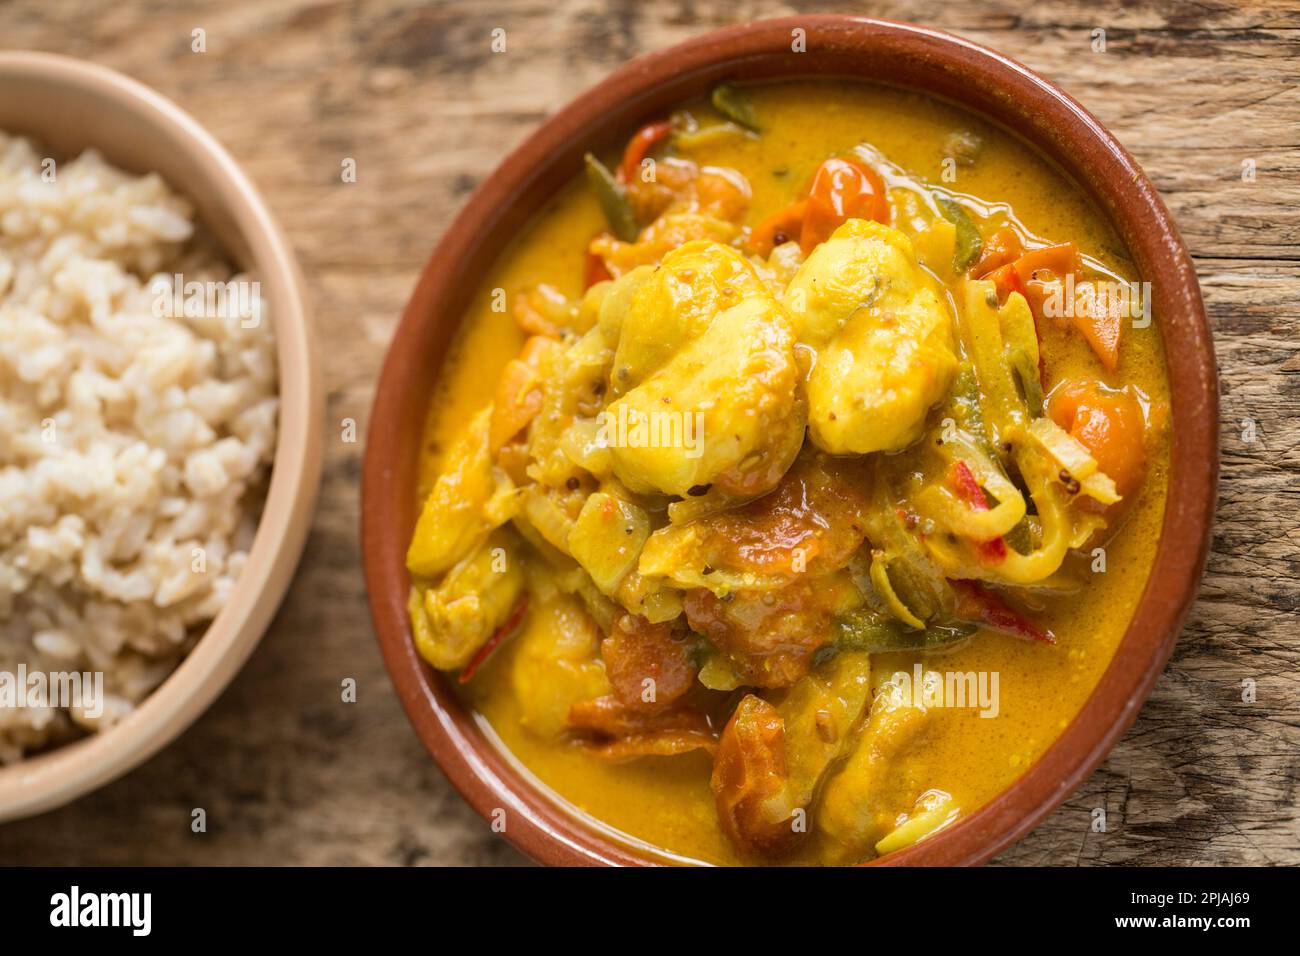 Curry de poisson fait maison avec des joues de rayon de épine et comprenant du lait de coco, des piments, des tomates et des épices. Angleterre GB Banque D'Images